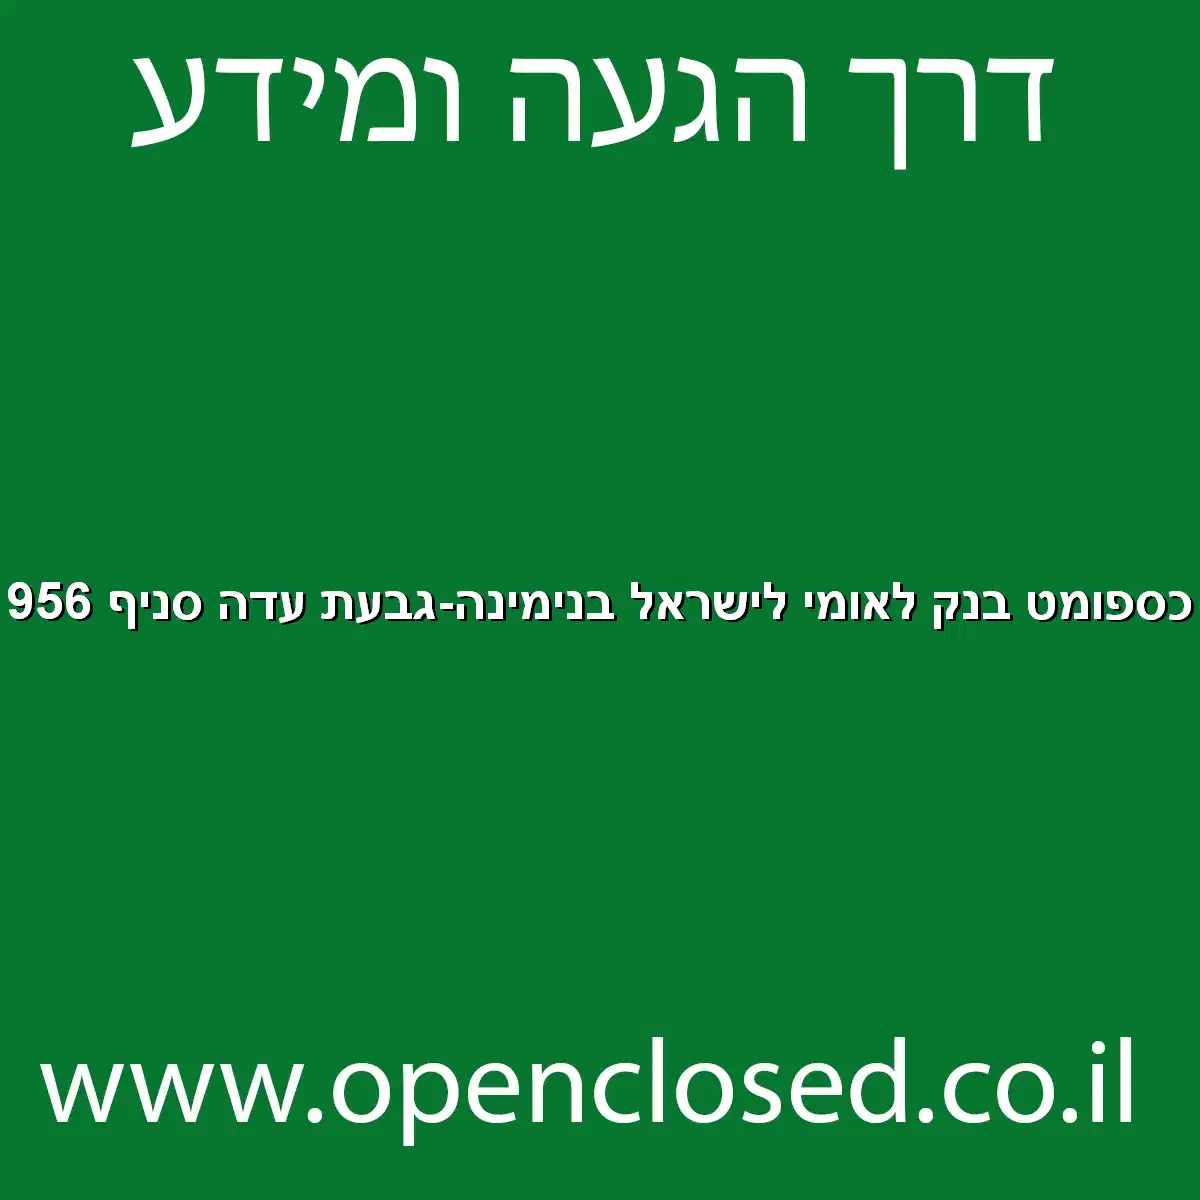 כספומט בנק לאומי לישראל בנימינה-גבעת עדה סניף 956